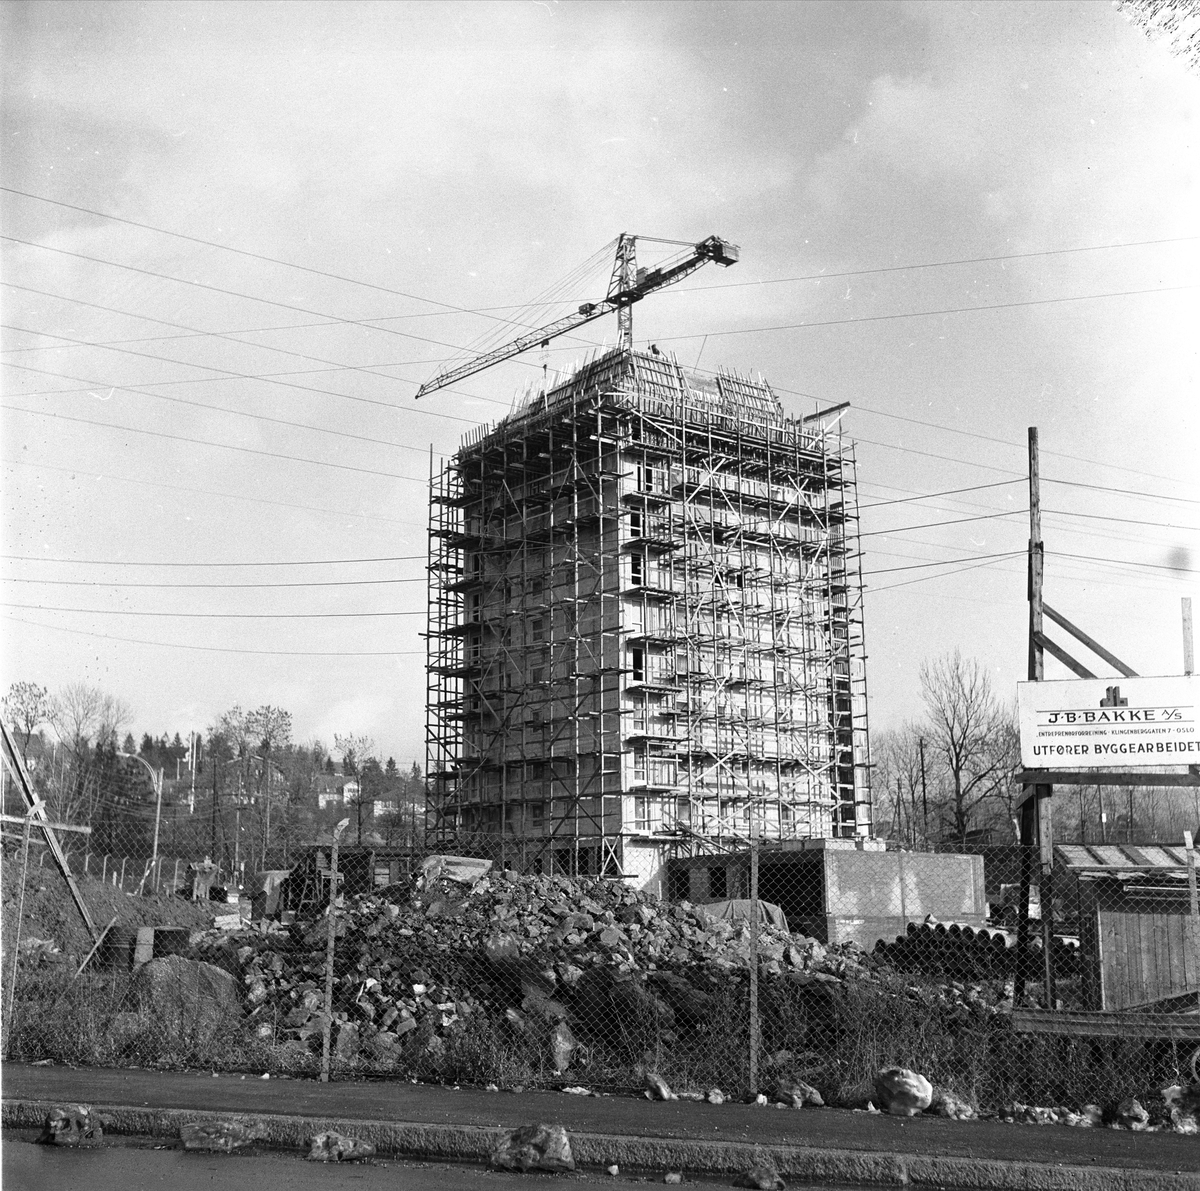 Tåsen, Oslo, november 1960. Høyhus under bygging.